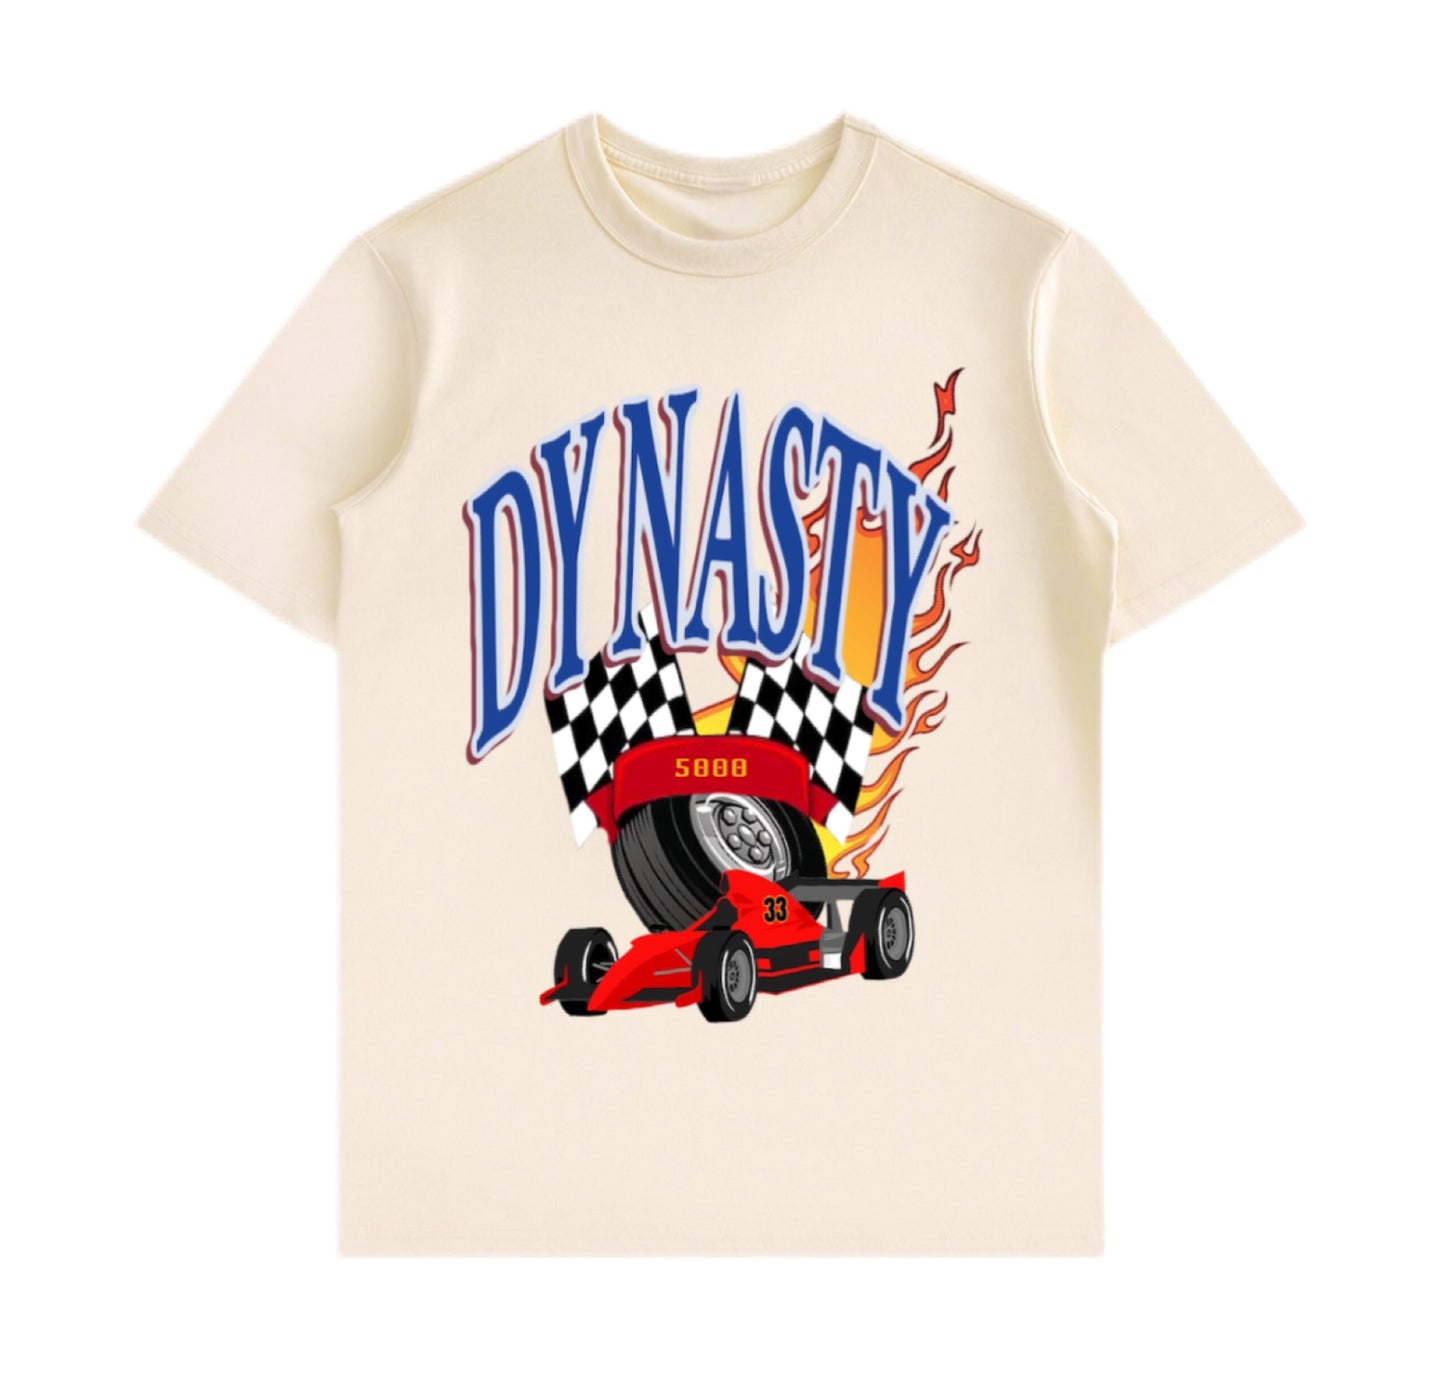 DYNASTY 5000 (Beige) T Shirt